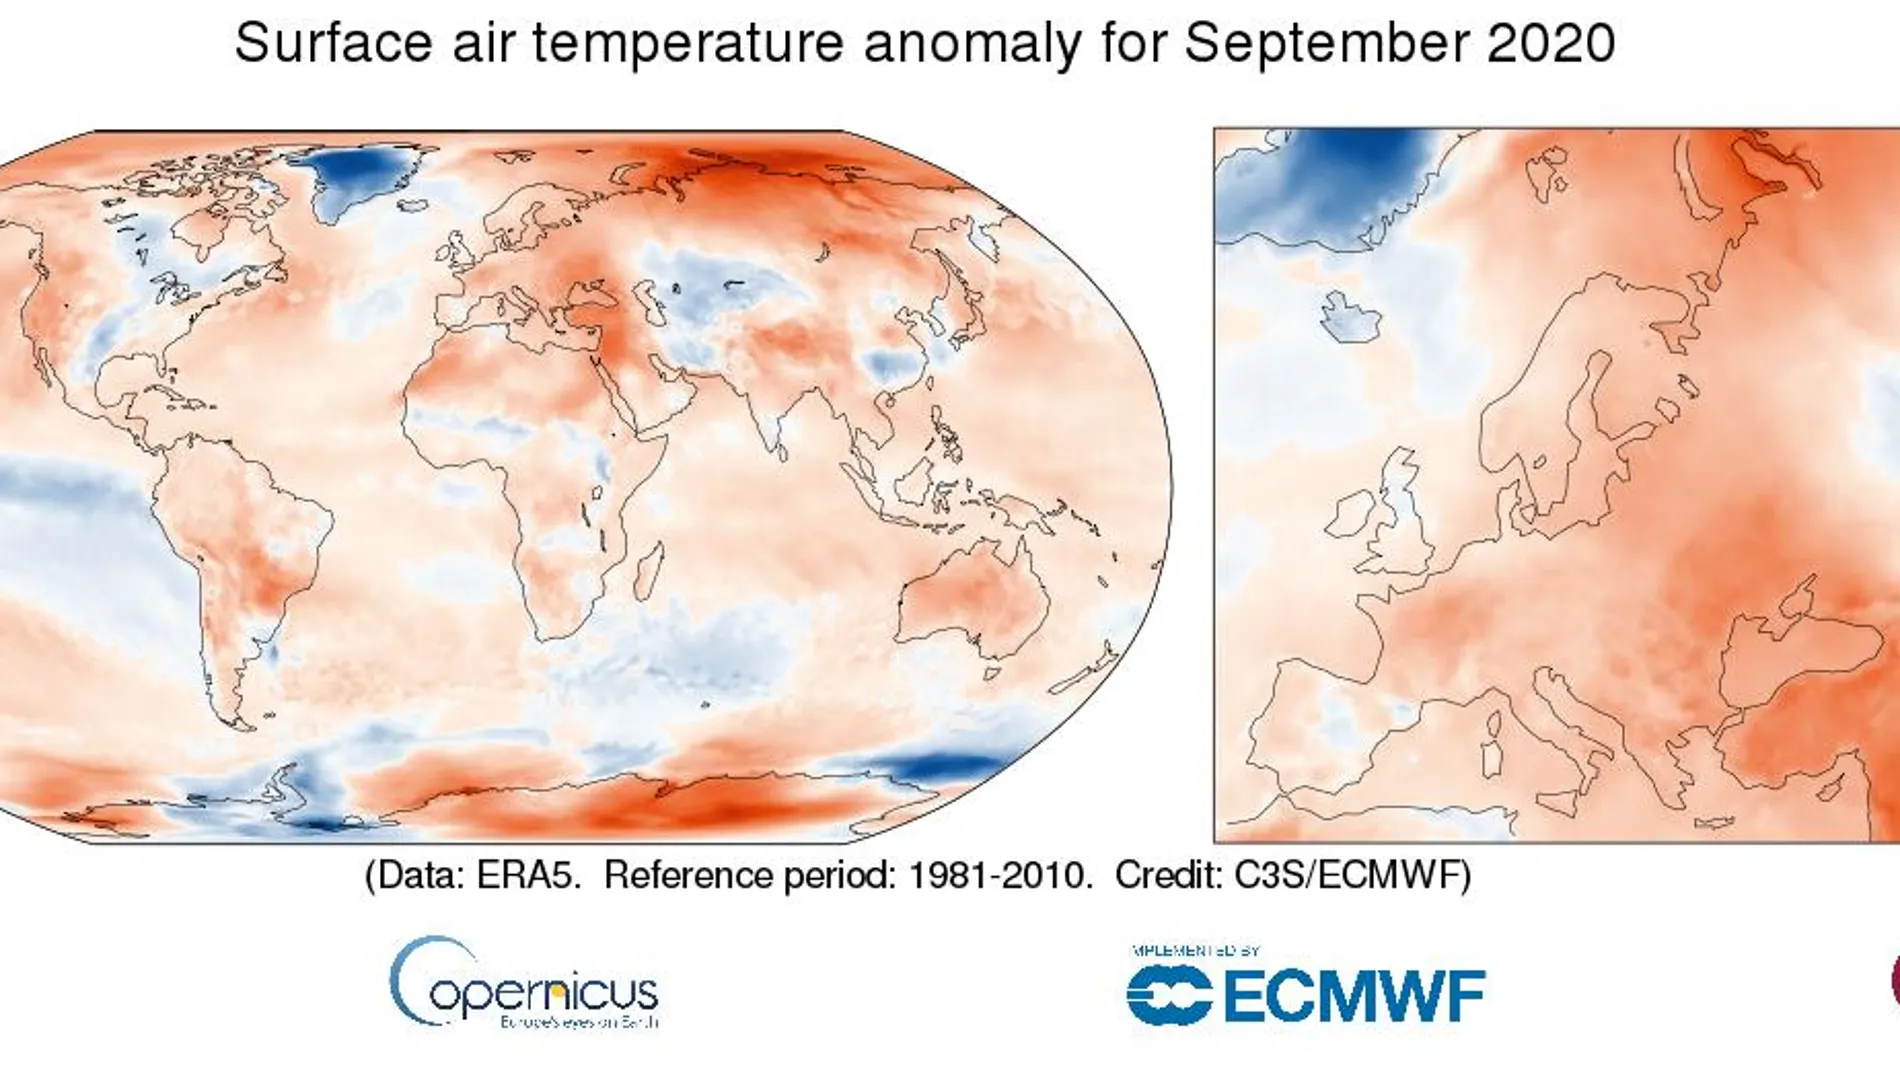 Anomalía de la temperatura del aire superficial para septiembre de 2020 en relación con el promedio de septiembre para el período 1981-2010 Fuente de datos: ERA5. Crédito: Servicio de Cambio Climático de Copernicus / ECMWF.